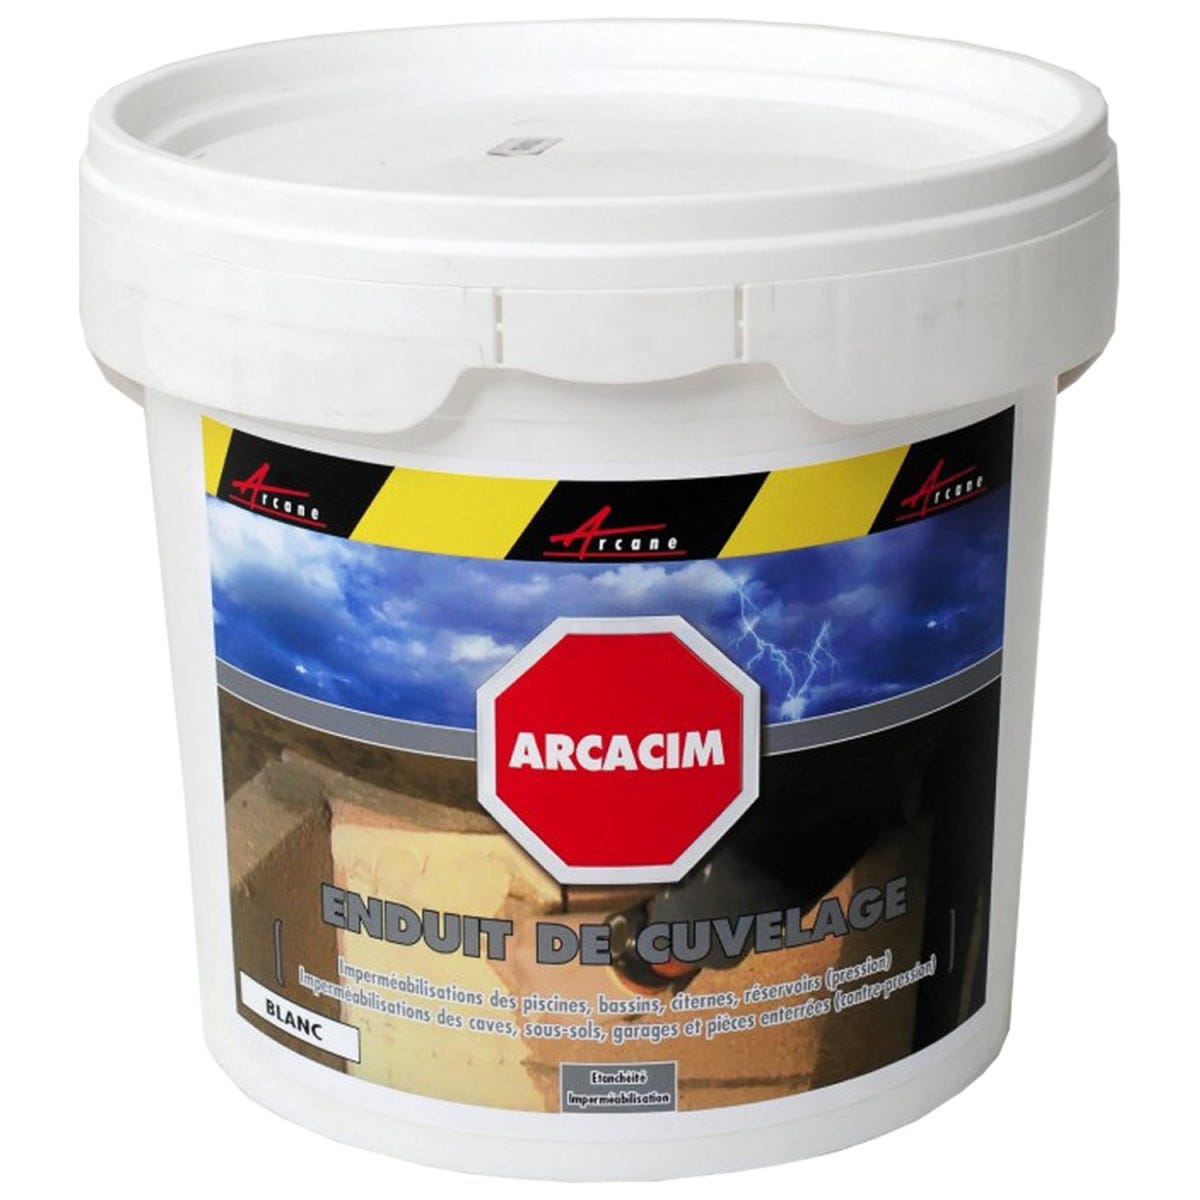 Enduit d'étanchéité hydrofuge pour support maçonné - ARCACIM - 5 kg - Gris - ARCANE INDUSTRIES 4